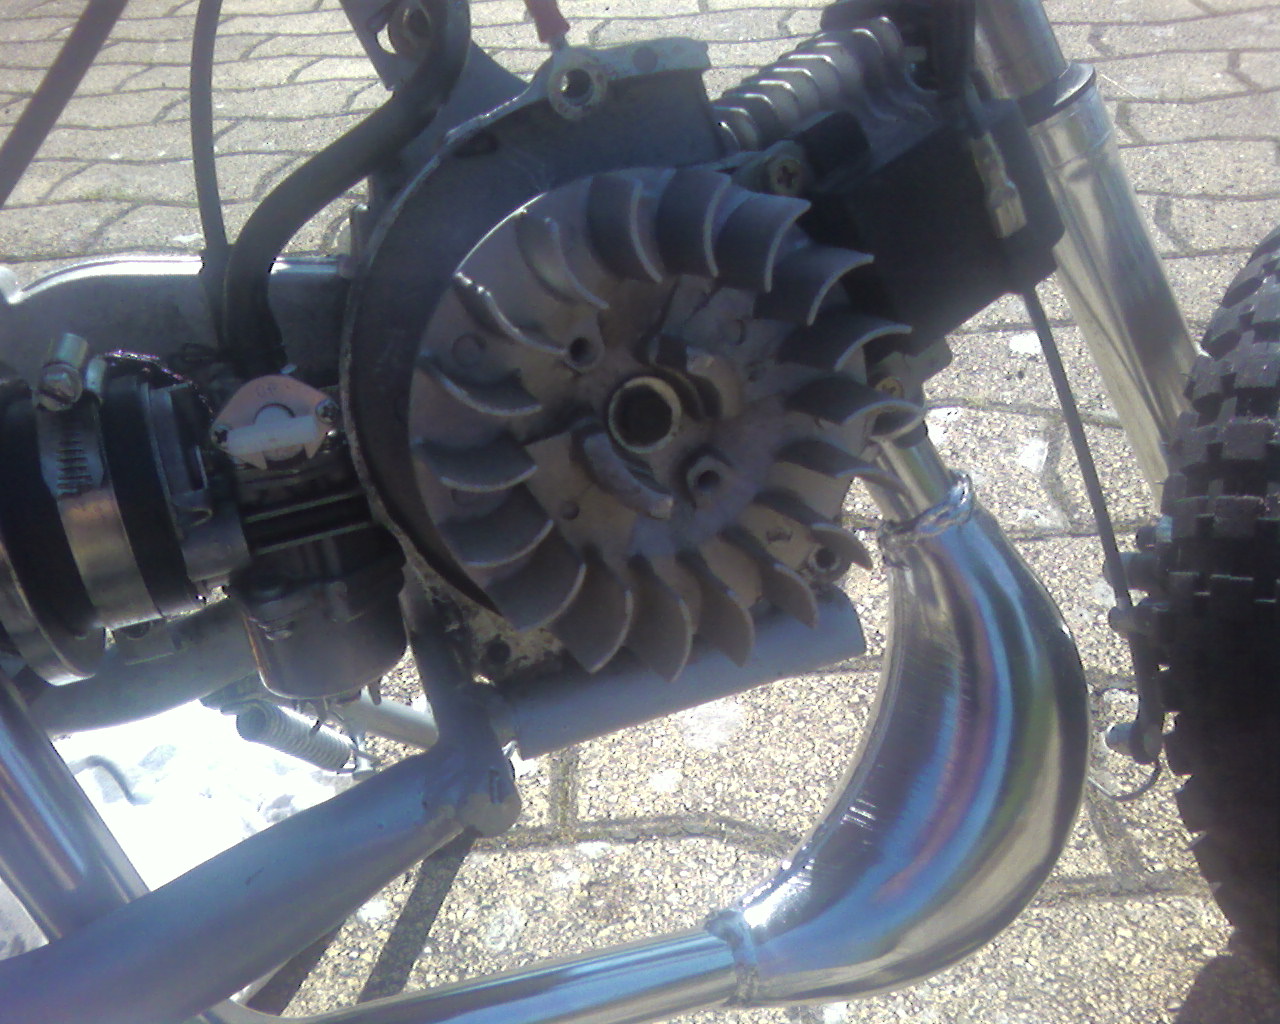 TUTO : réparer son lanceur de pocket bike en moins de 10minutes 